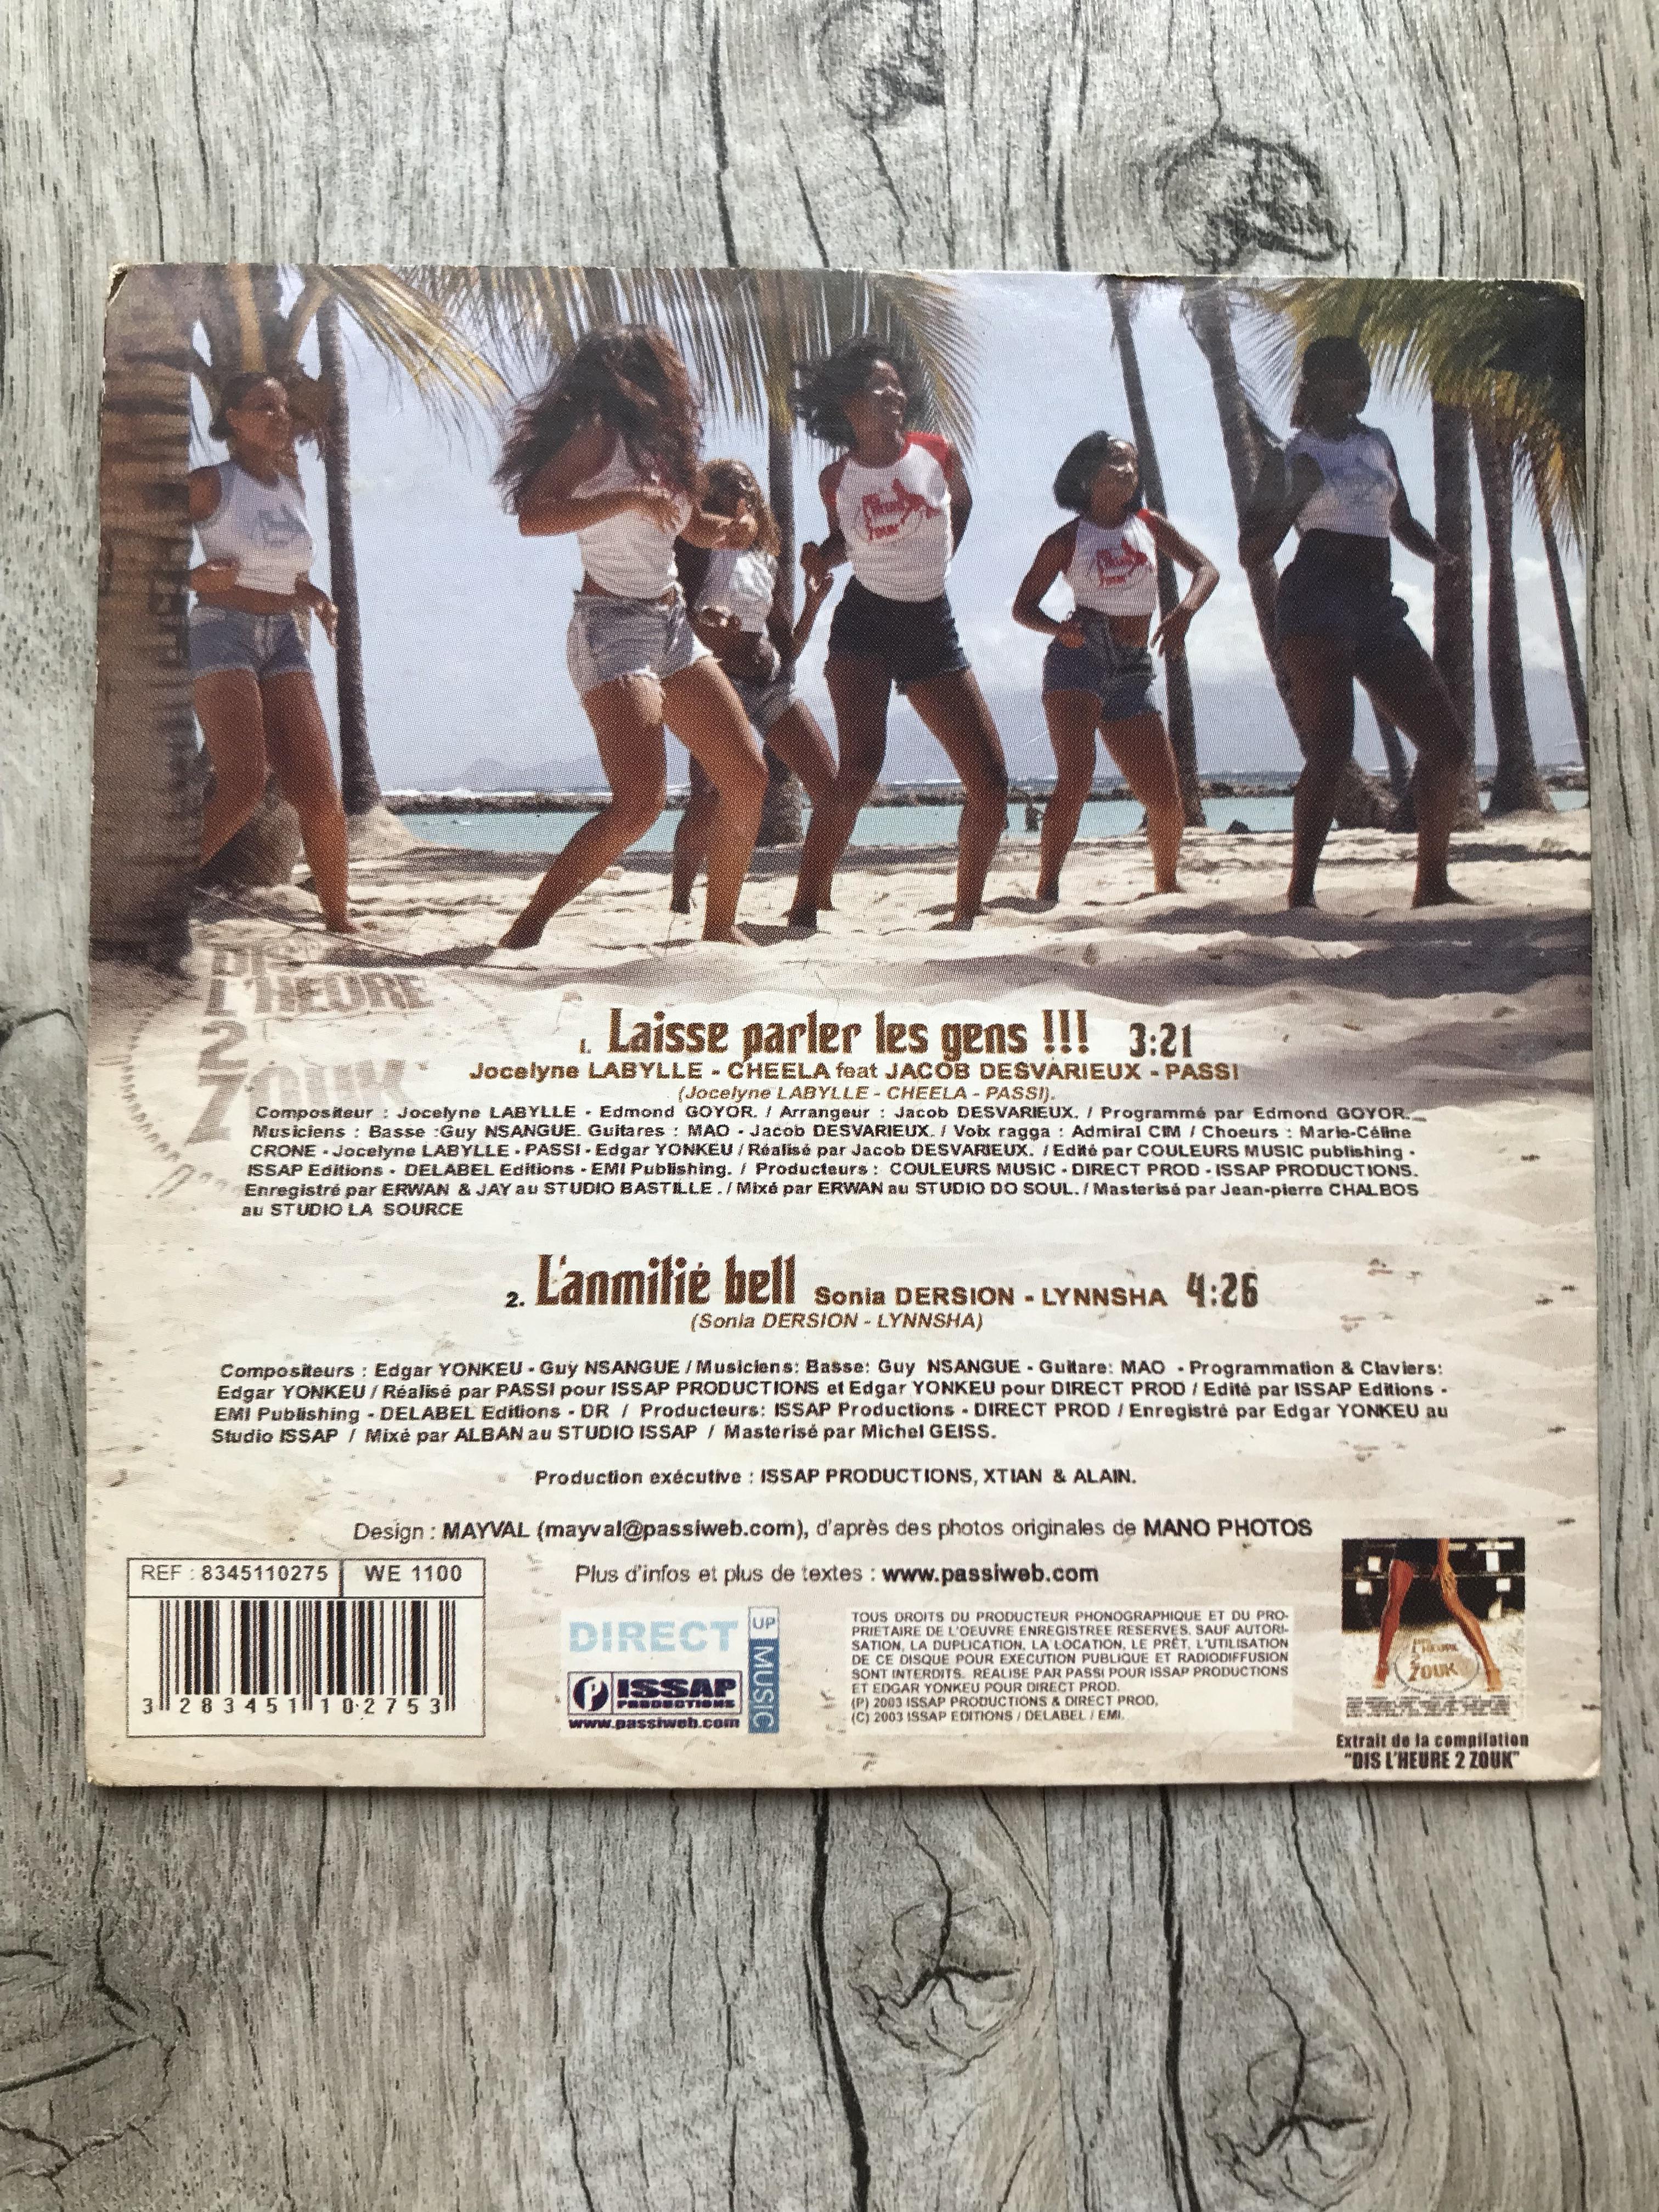 troc de troc cd single "laisse parler les gens" / 2003 image 1